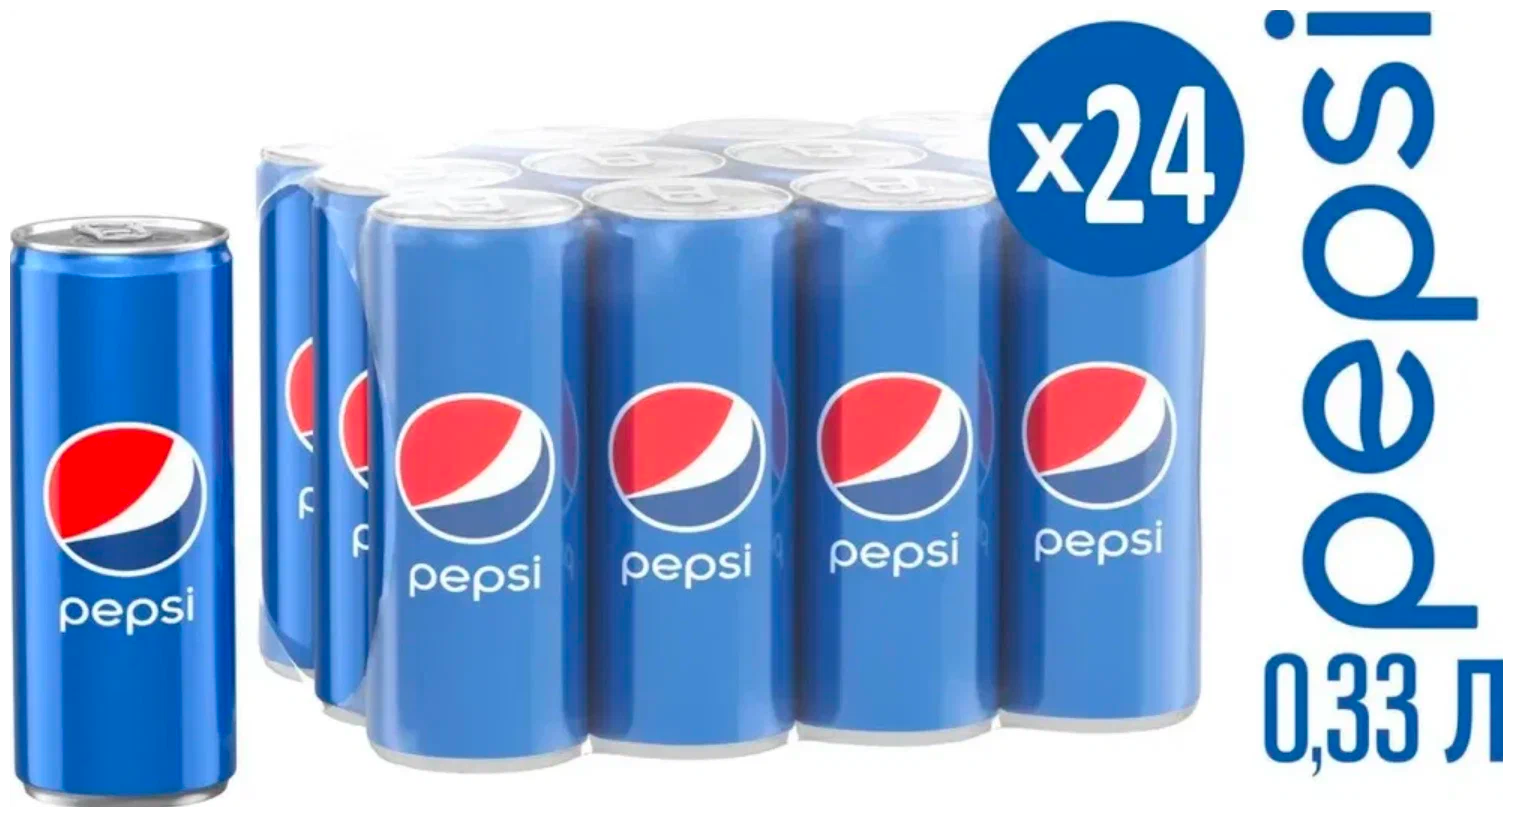 Газированный напиток Pepsi, Польшакола, 0.33 л, металлическая банка, 24 шт.